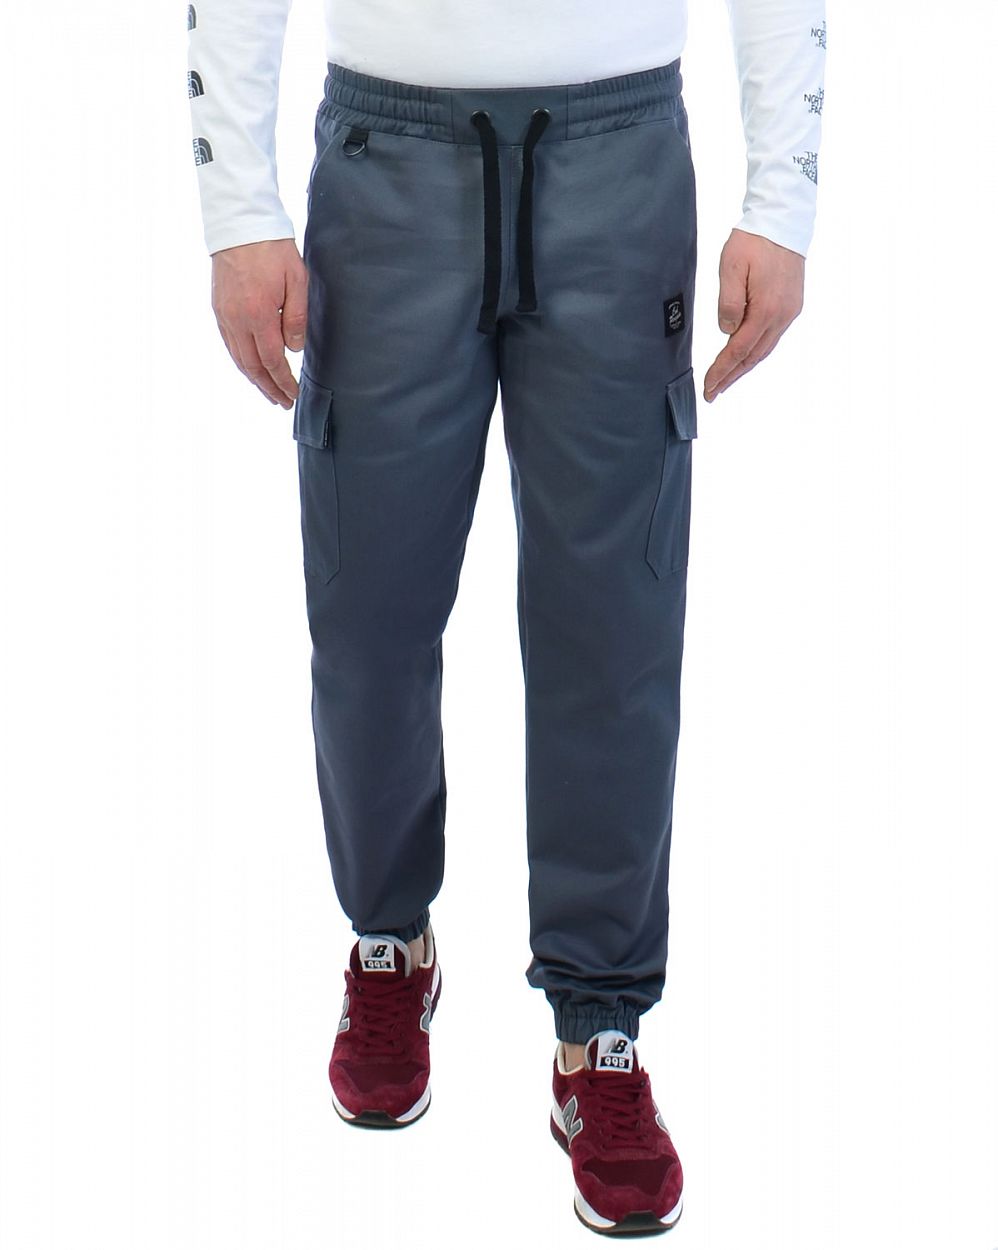 Джоггеры карго с карманами мужские катоновые плотные Cool Penguin JMD 1713 Dark Gray отзывы